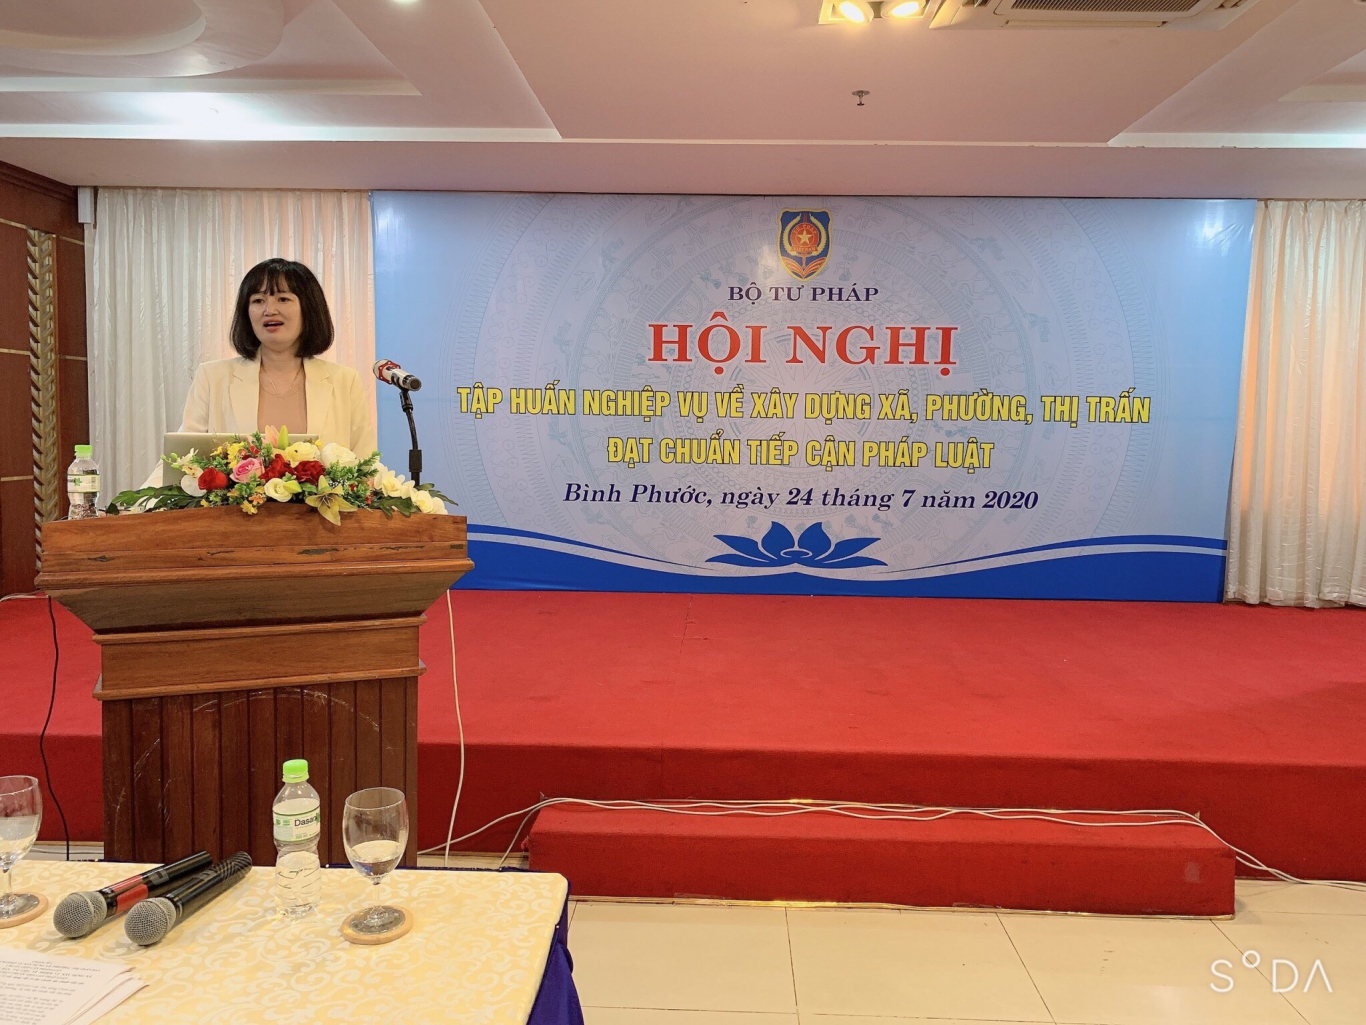 Đồng chí Ngô Quỳnh Hoa, Phó Vụ trưởng Vụ PBGDPL phổ biến chuyên đề tại Hội nghị